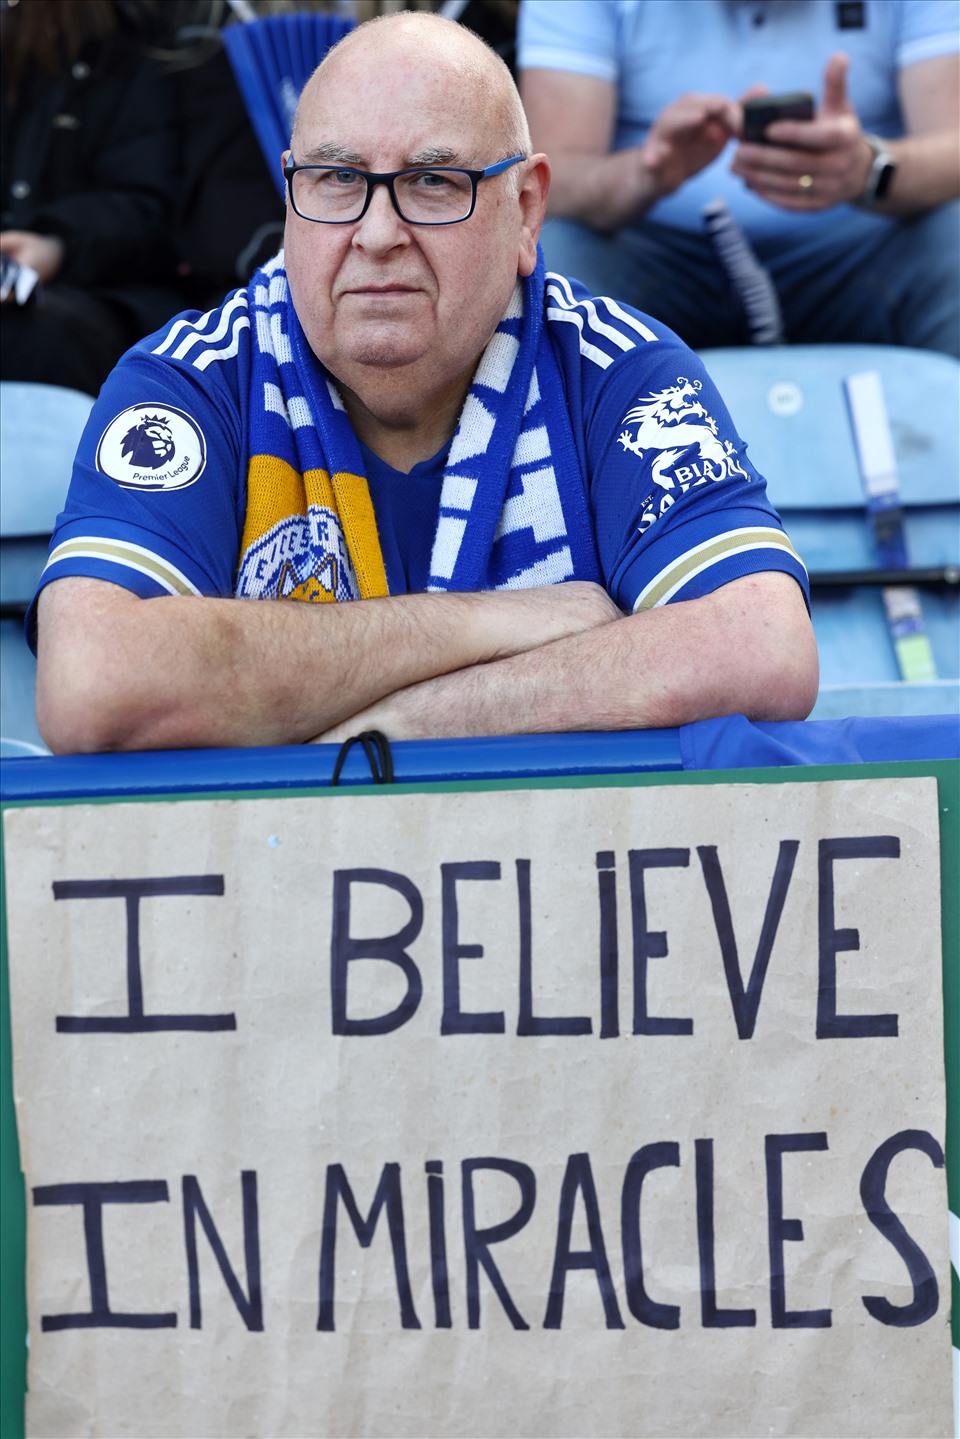 “Tôi tin vào một phép màu” - thông điệp của một cổ động viên Leicester trên khán đài trong trận gặp Everton. Ảnh: AFP